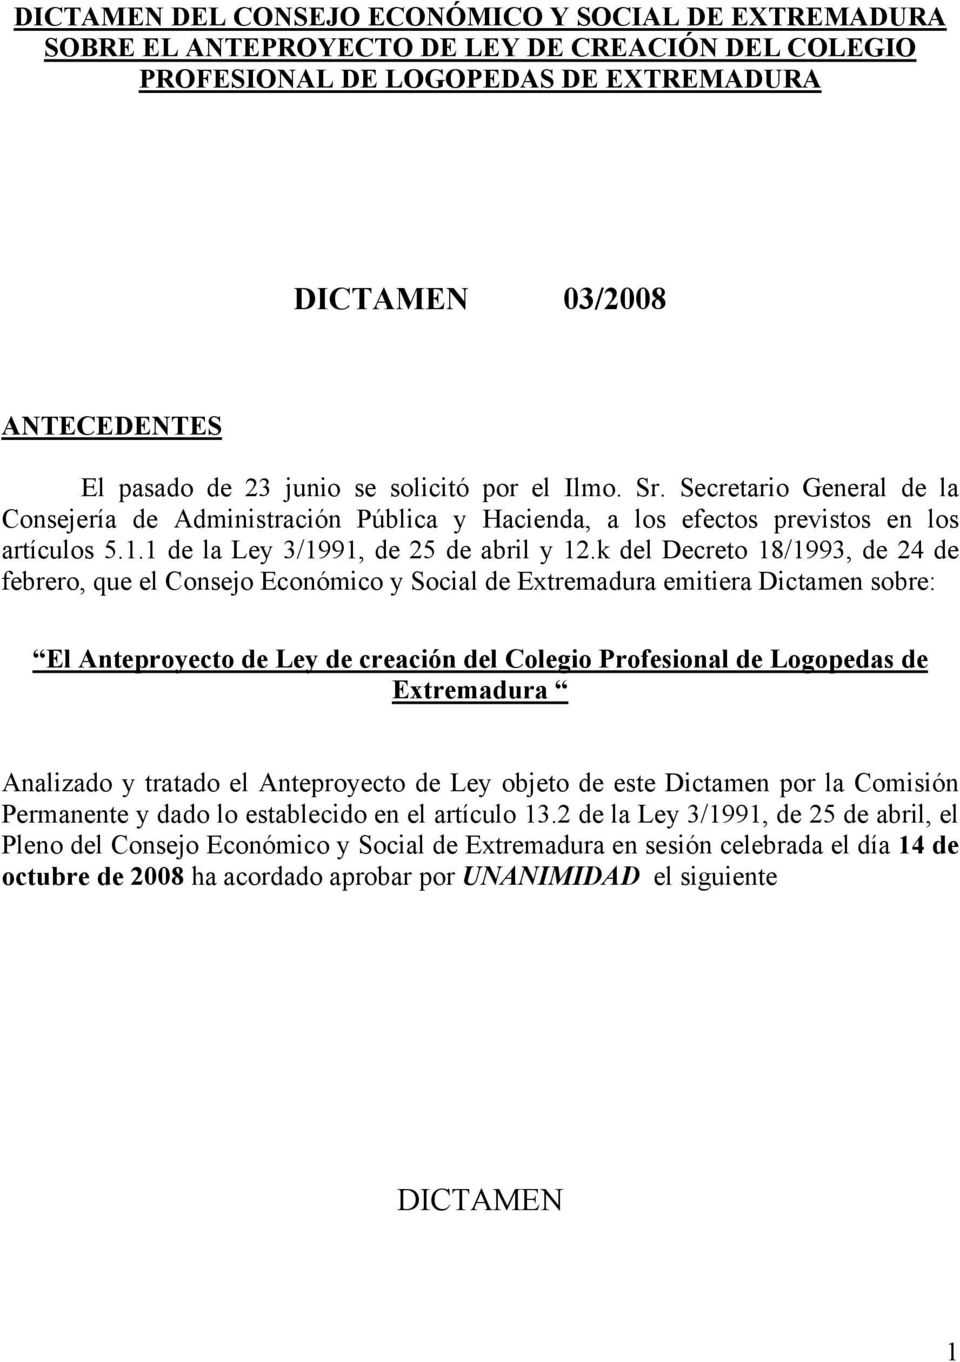 k del Decreto 18/1993, de 24 de febrero, que el Consejo Económico y Social de Extremadura emitiera Dictamen sobre: El Anteproyecto de Ley de creación del Colegio Profesional de Logopedas de